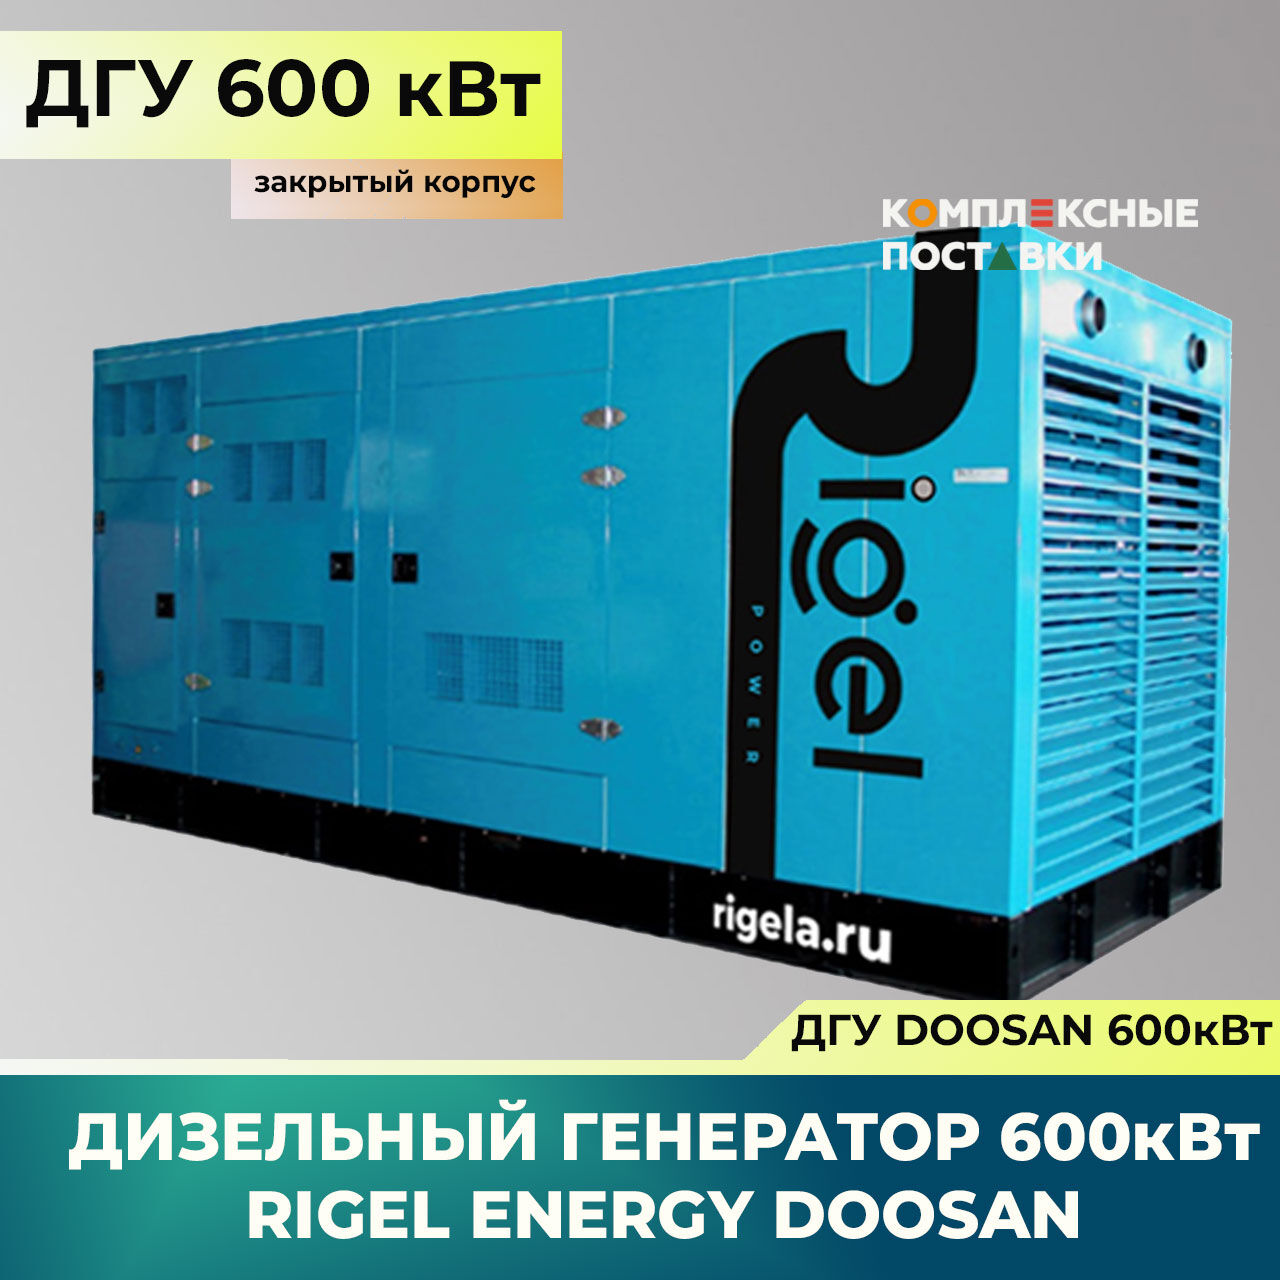 ДГУ 600кВт Doosan Дизель-генератор Rigel Energy Doosan RED 600(600 кВт, Doosan) закрытый